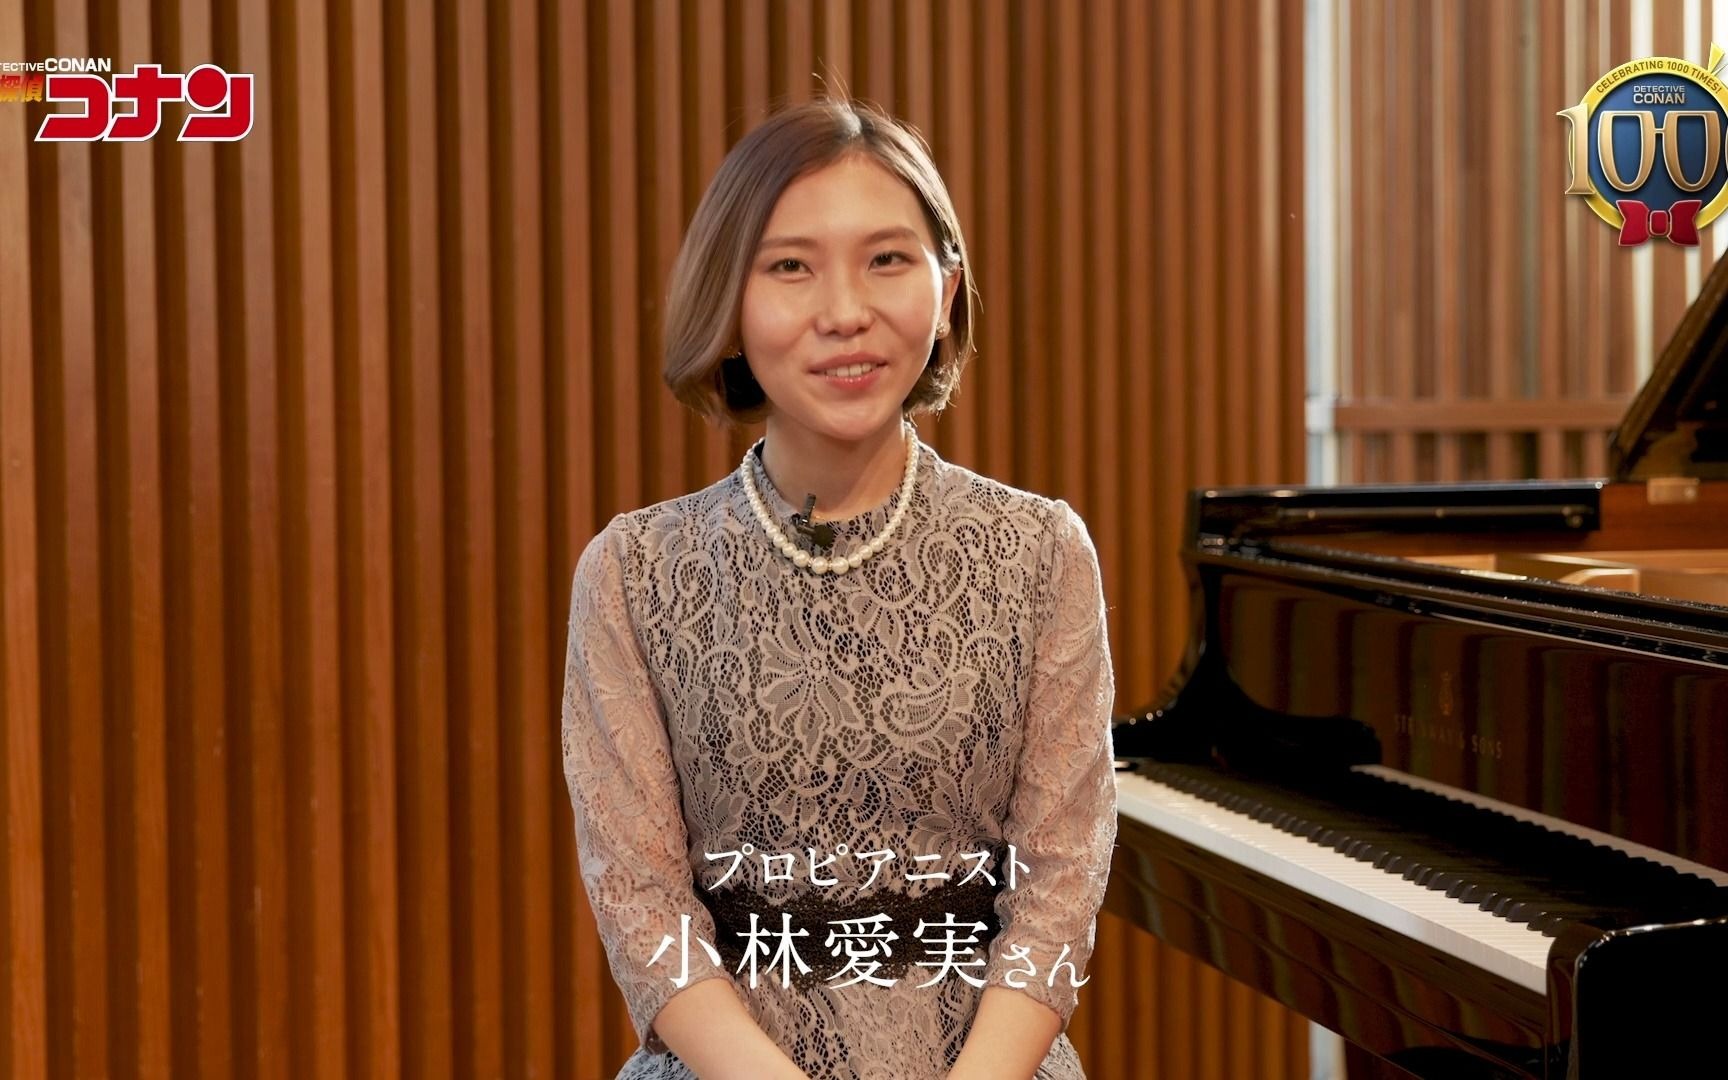 世界级钢琴家小林爱实女士演奏钢琴奏鸣曲《月光奏鸣曲》